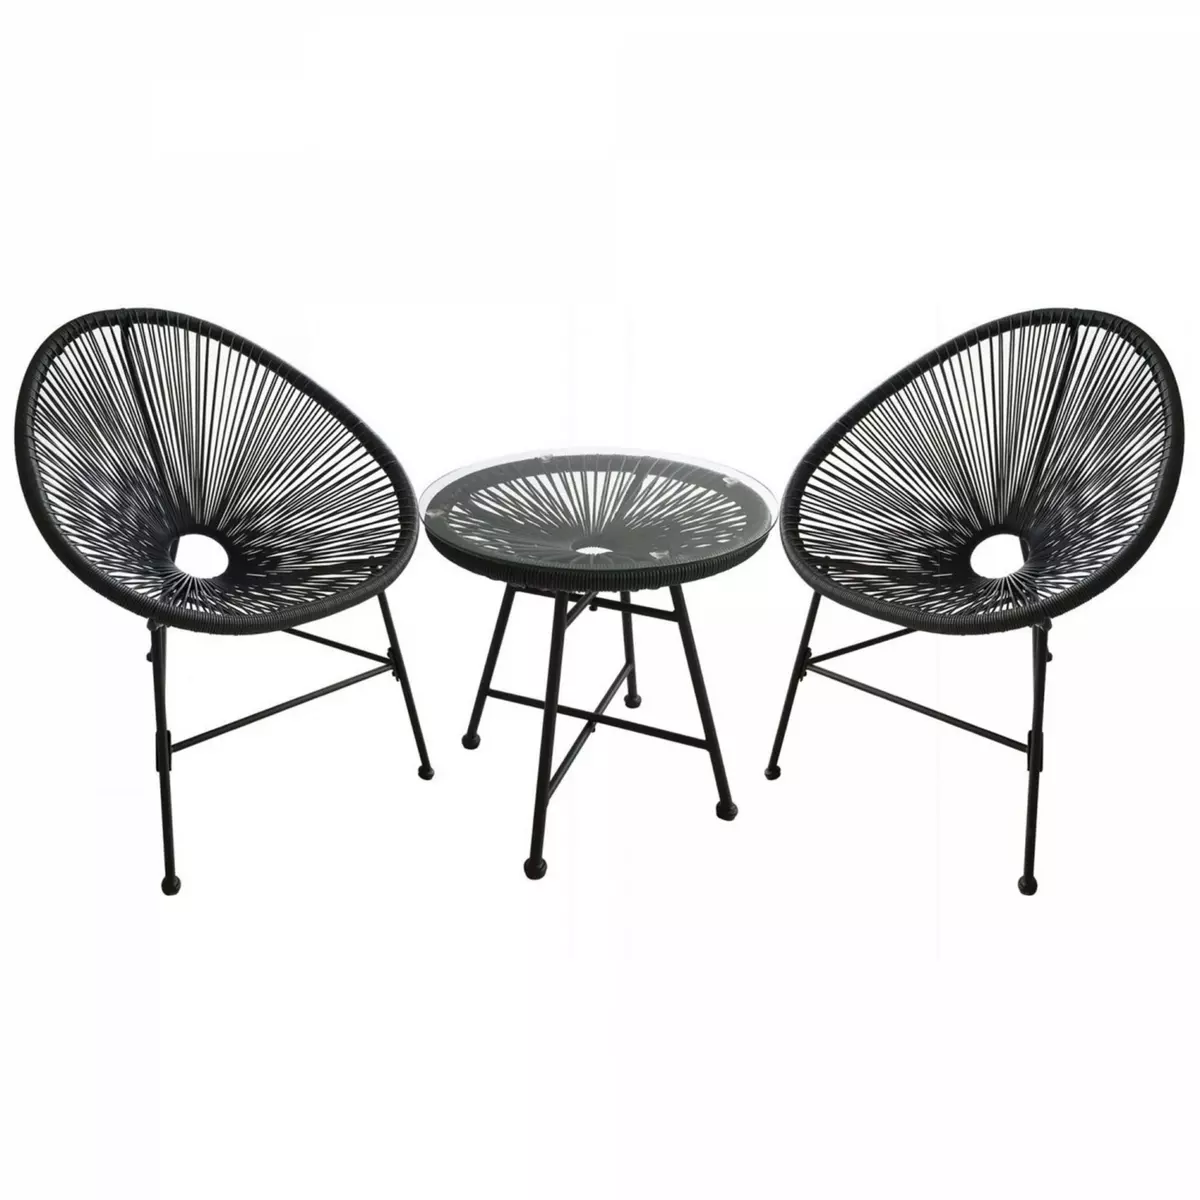 CONCEPT USINE Salon de jardin 2 fauteuils oeuf + table basse gris ACAPULCO